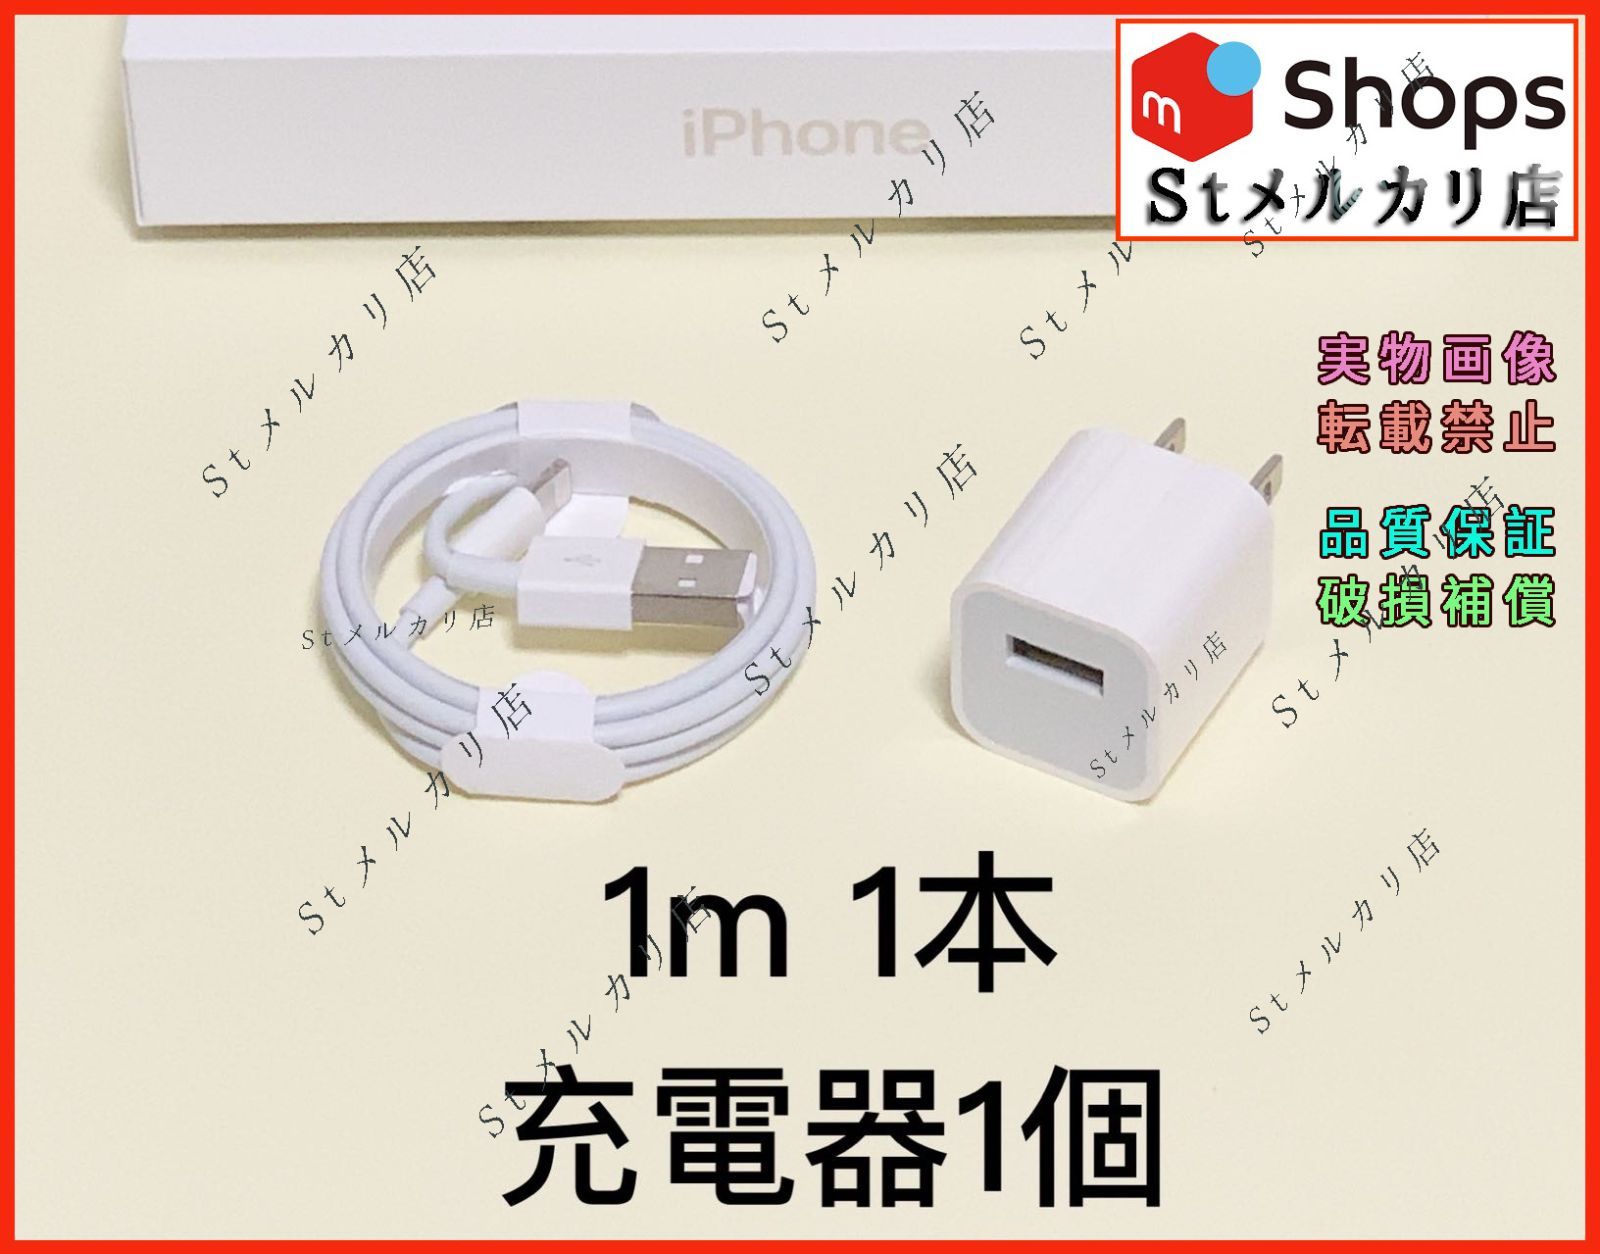 1個 USB充電器 1m1本 iPhone アイフォンケーブル 新品(0dz1 - スマホ